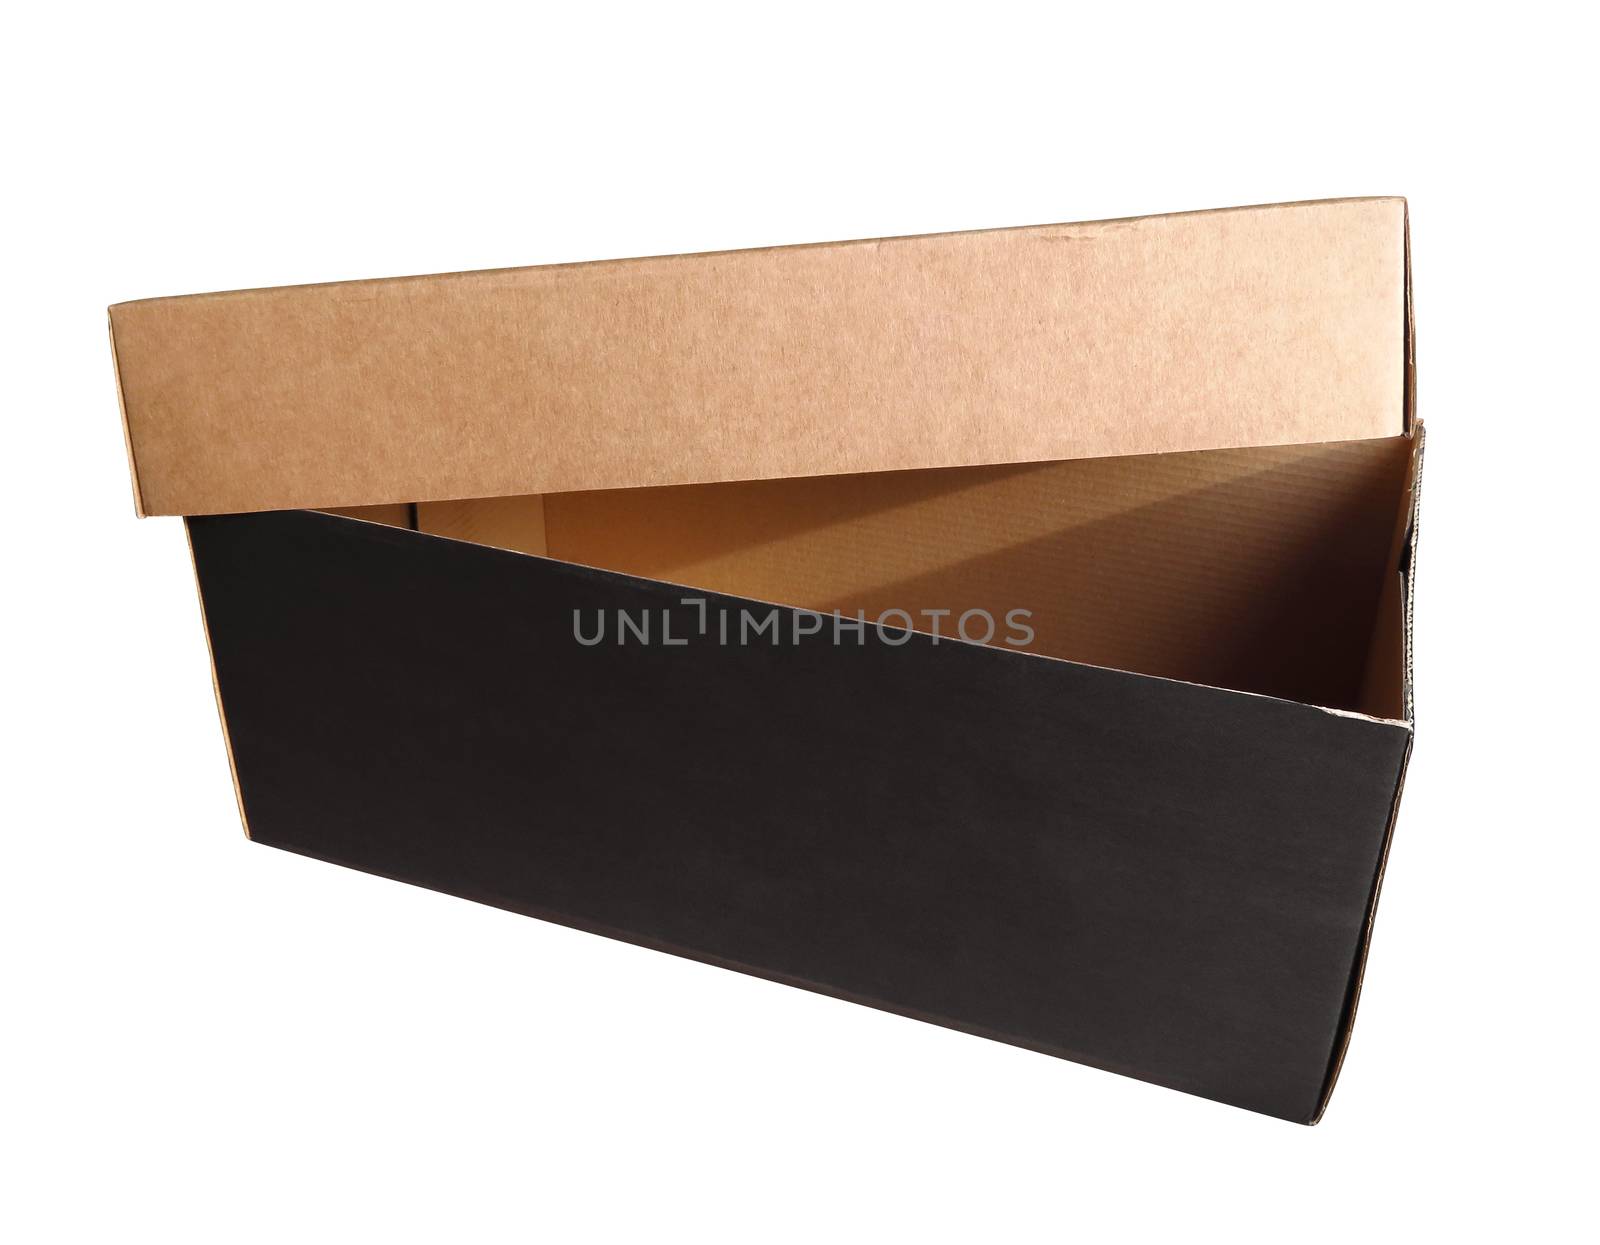 Open cardboard box by Venakr